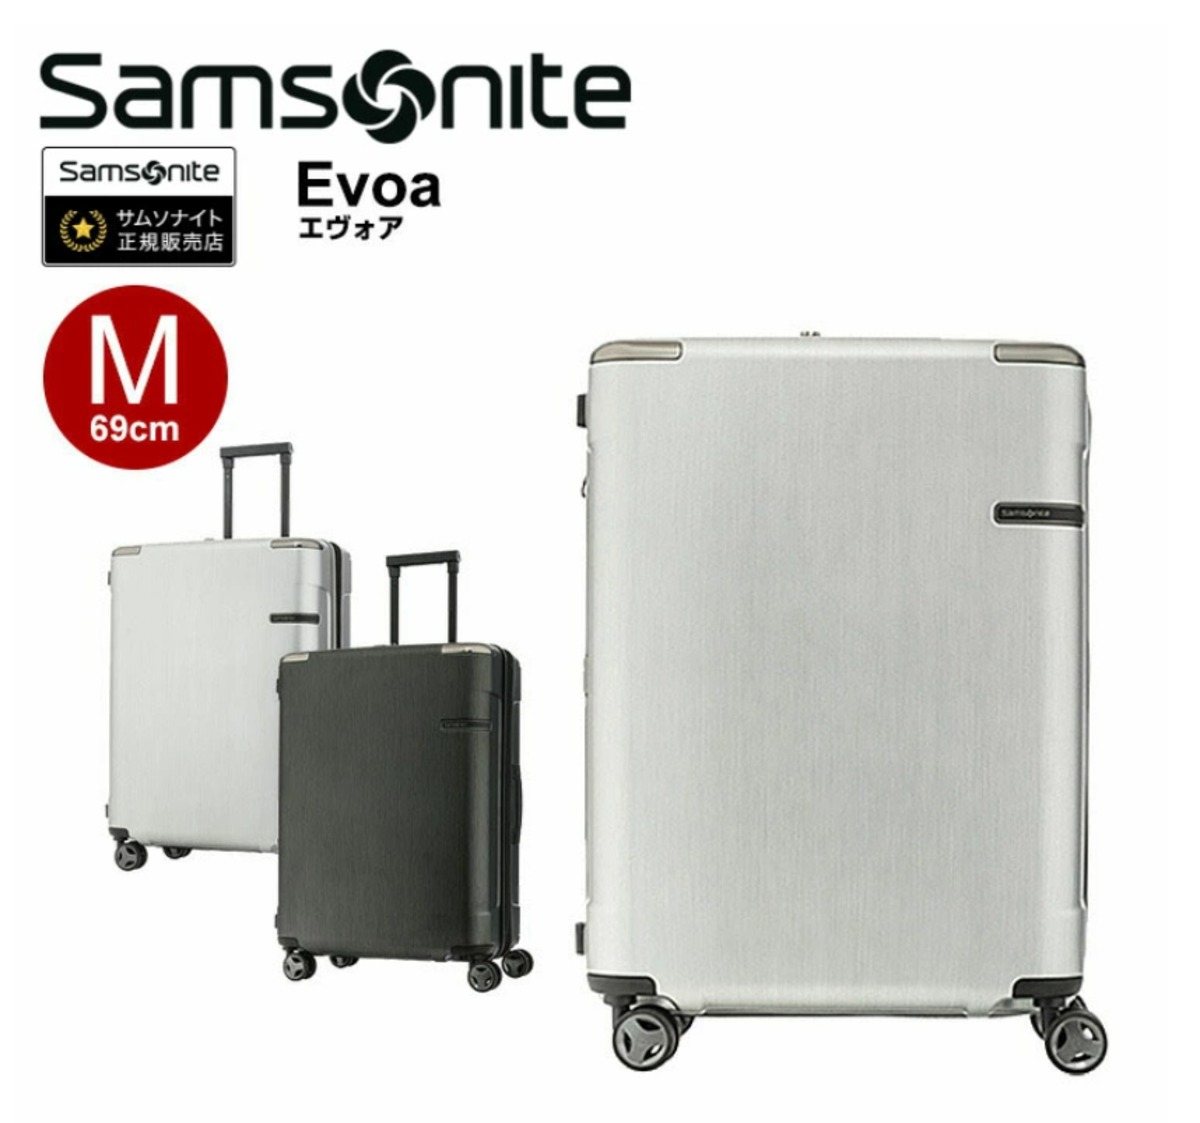 ＜SAMSONITE＞EVOA SPINNER 69cm スーツケース 